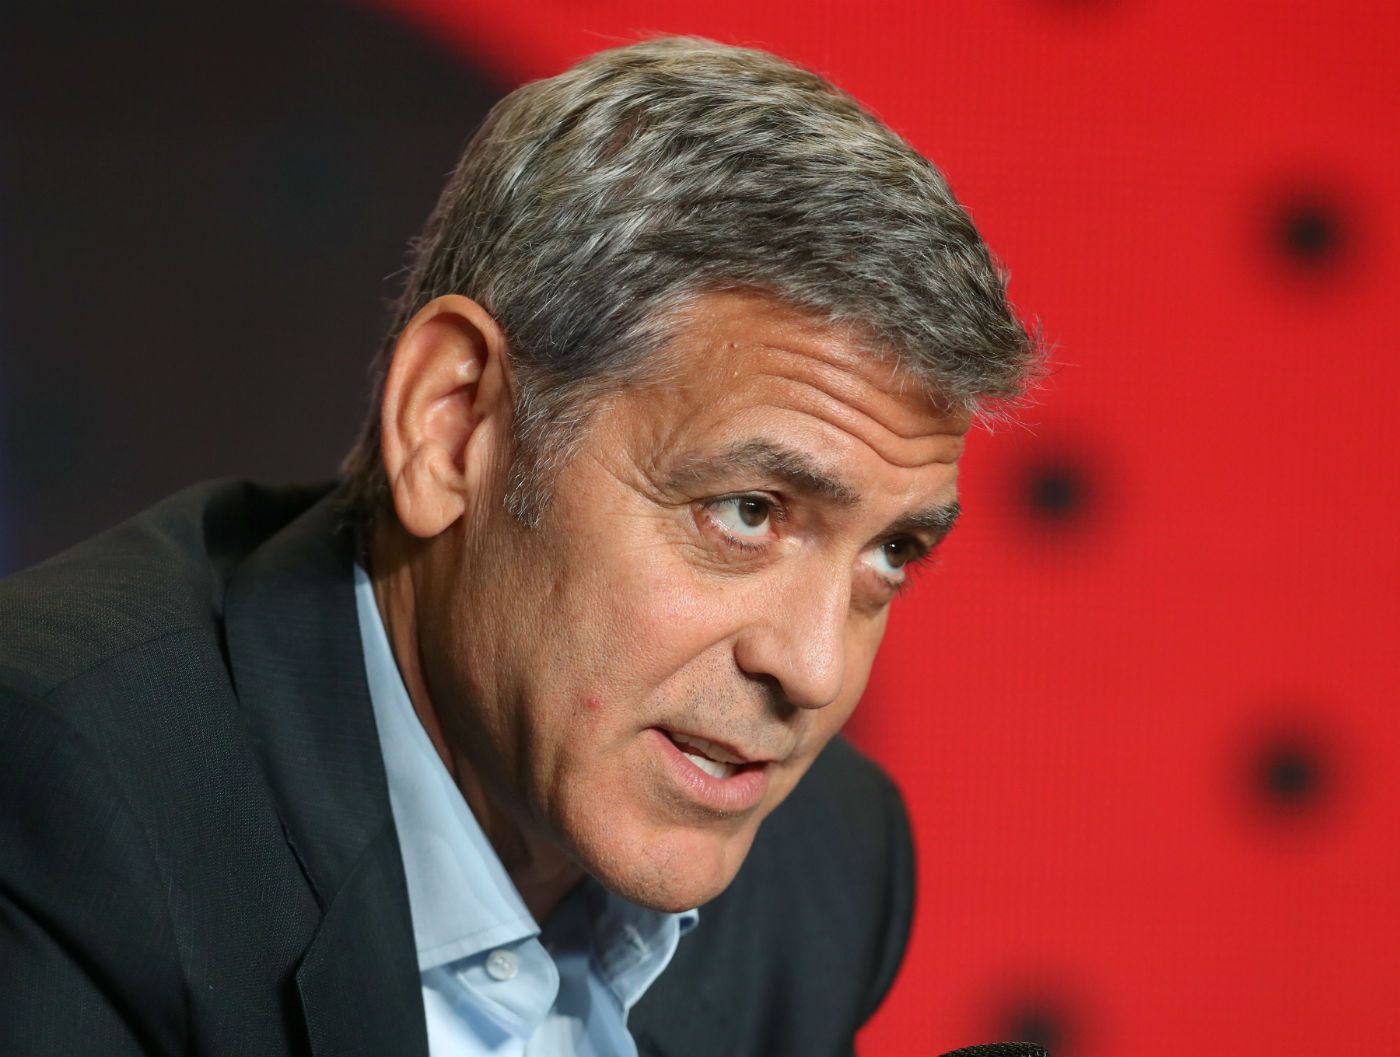 10 George Clooney